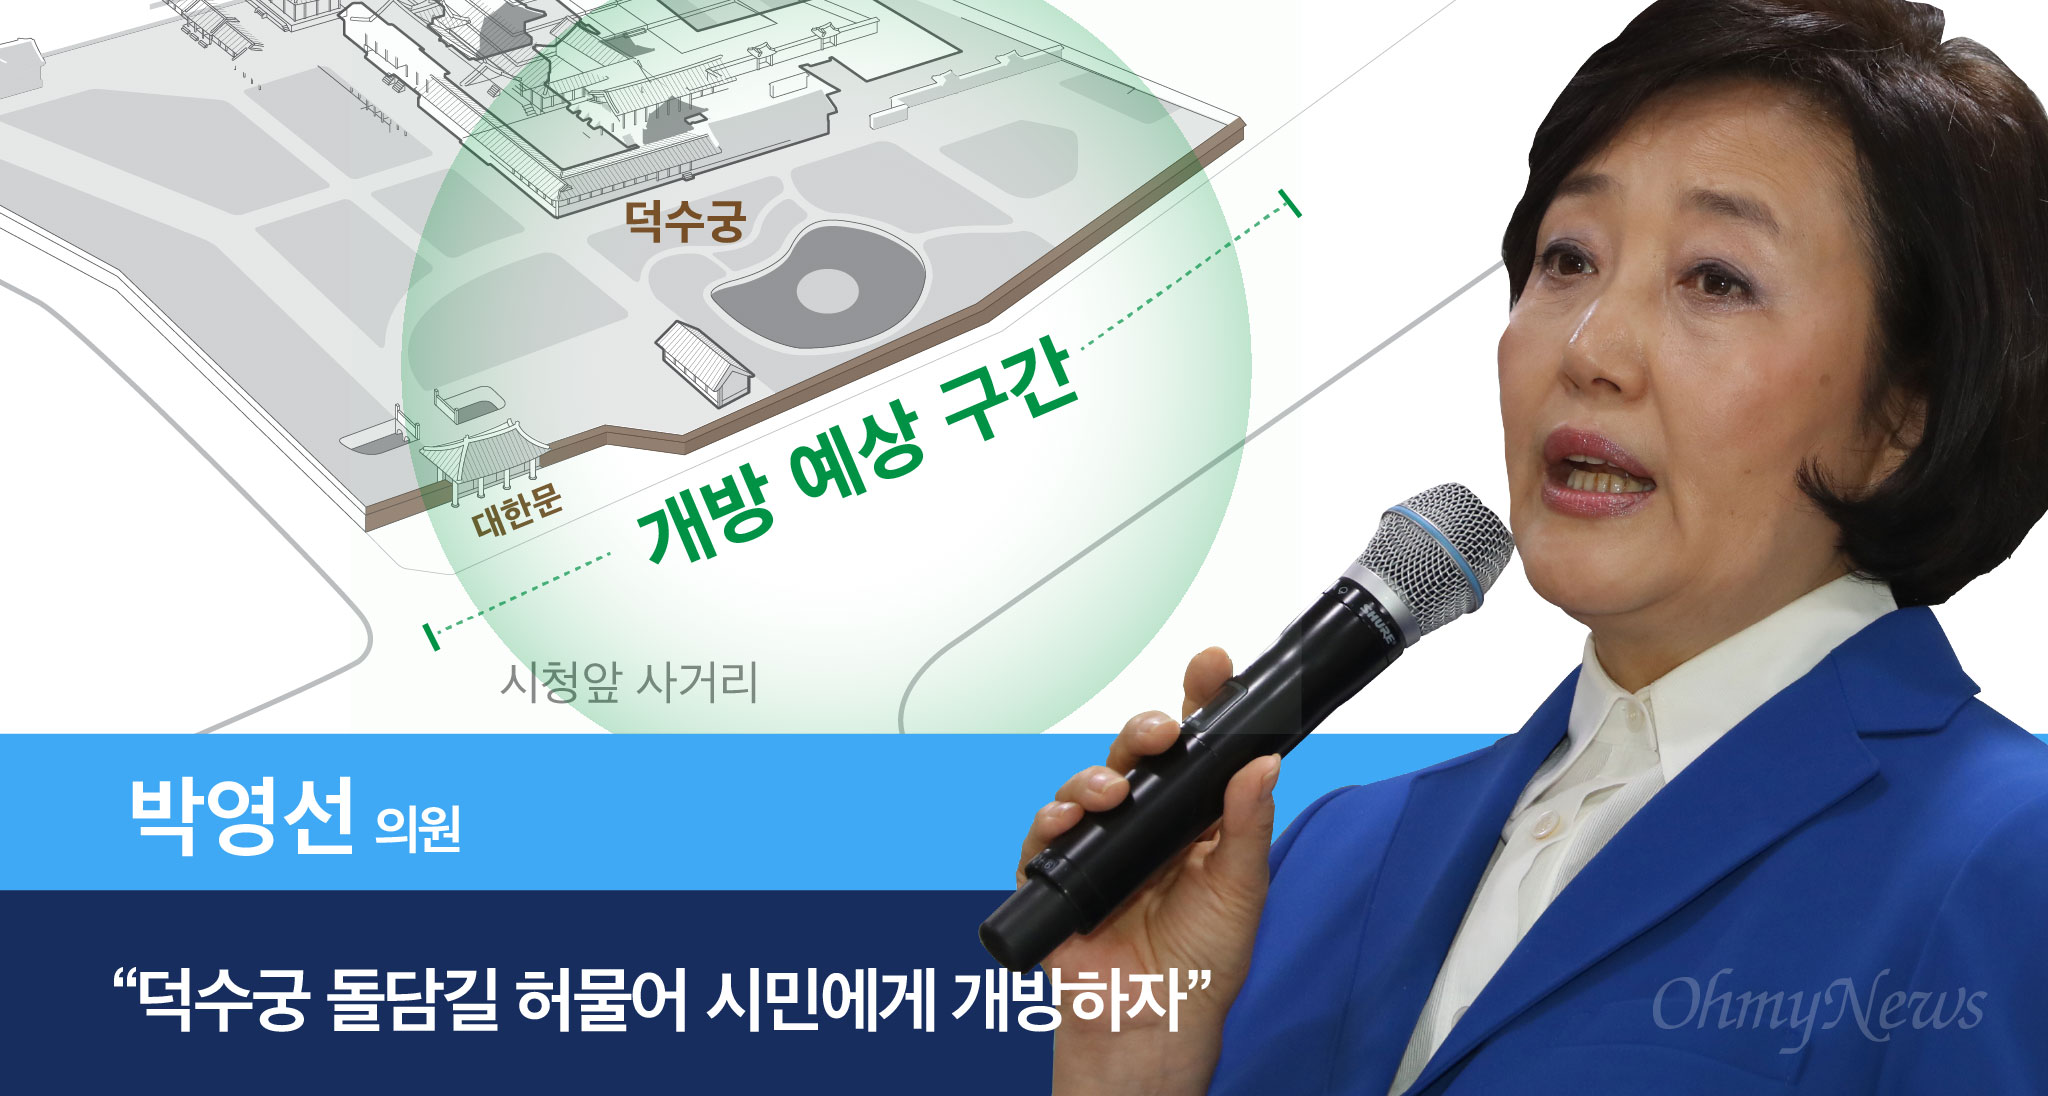  박영선 의원 “덕수궁 돌담길 허물어 시민에게 개방하자” 